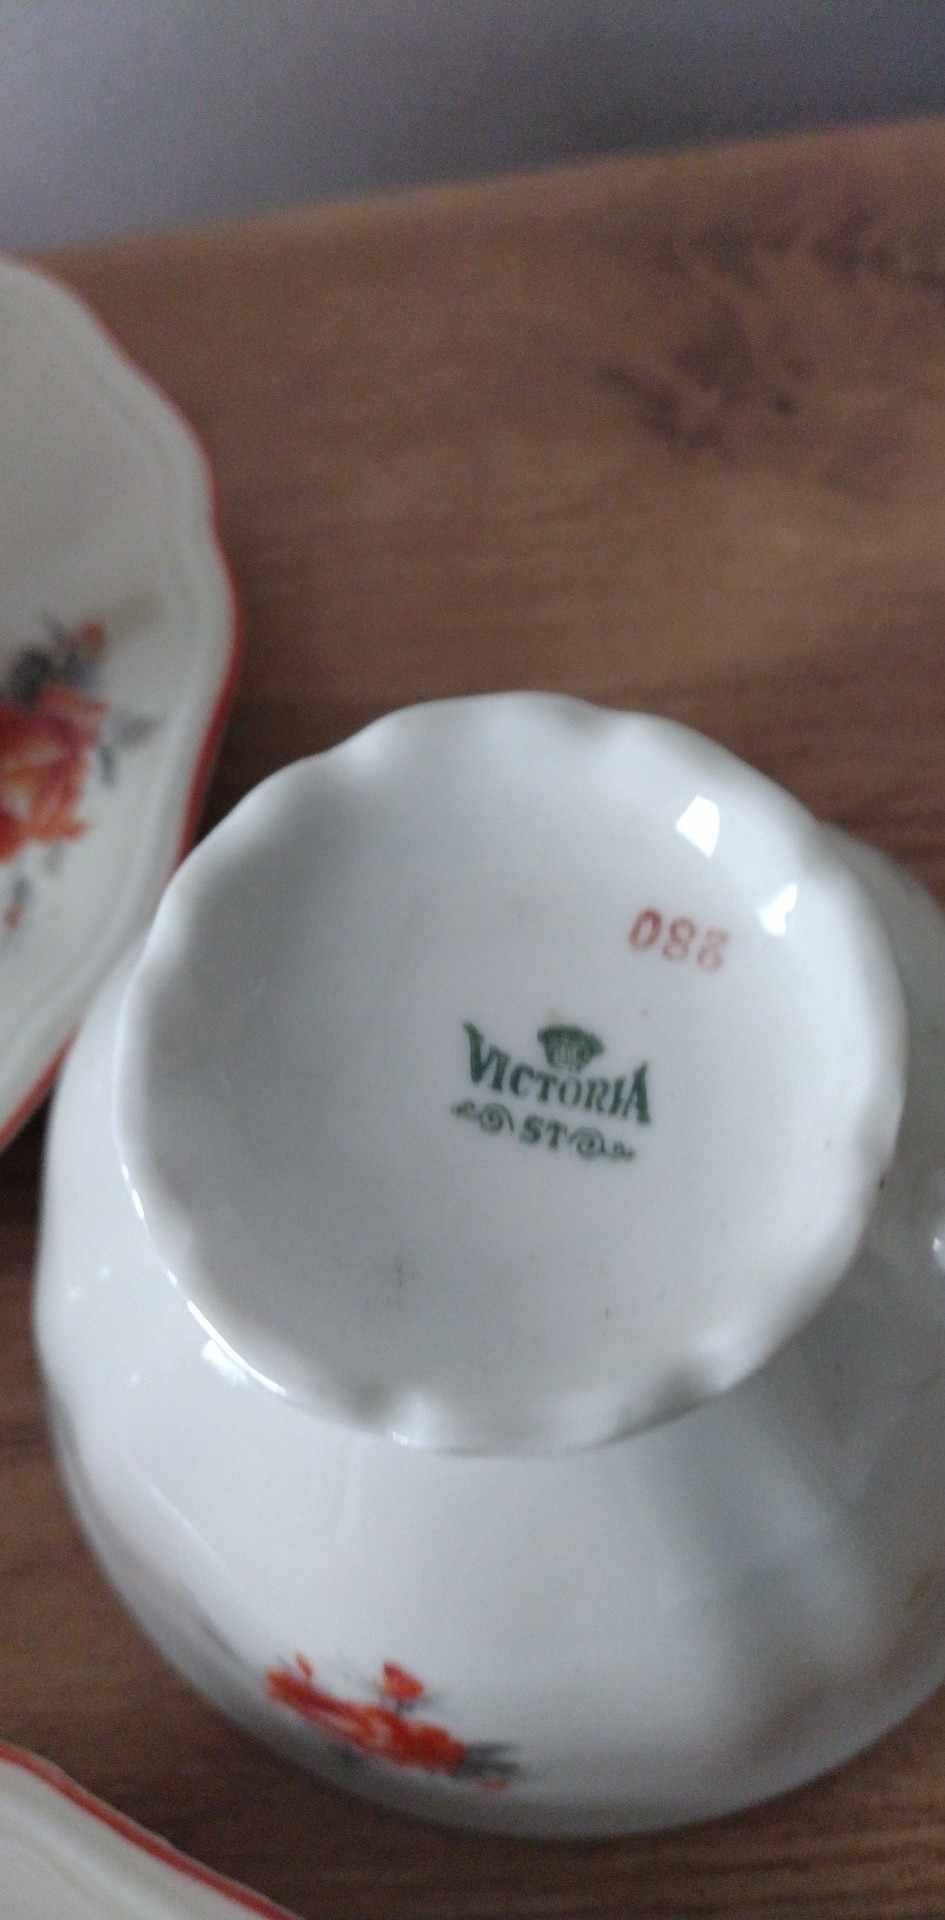 Stara porcelana filiżanki mlecznik cukiernica serwis Victoria